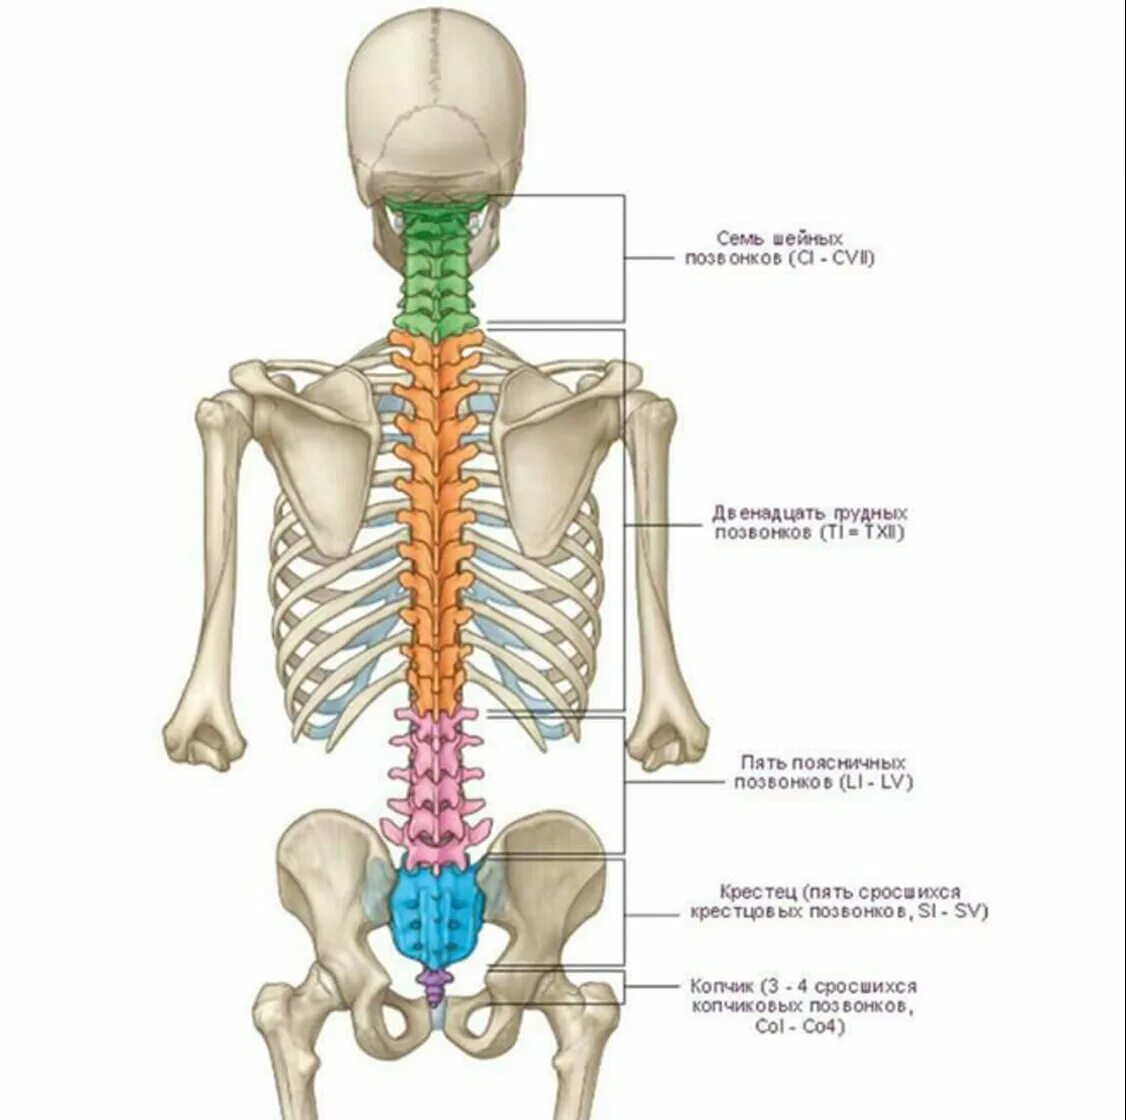 Анатомия человека кости скелета позвоночника. Анатомия костей поясничного отдела позвоночника. Отделы позвоночника человека на скелете человека.